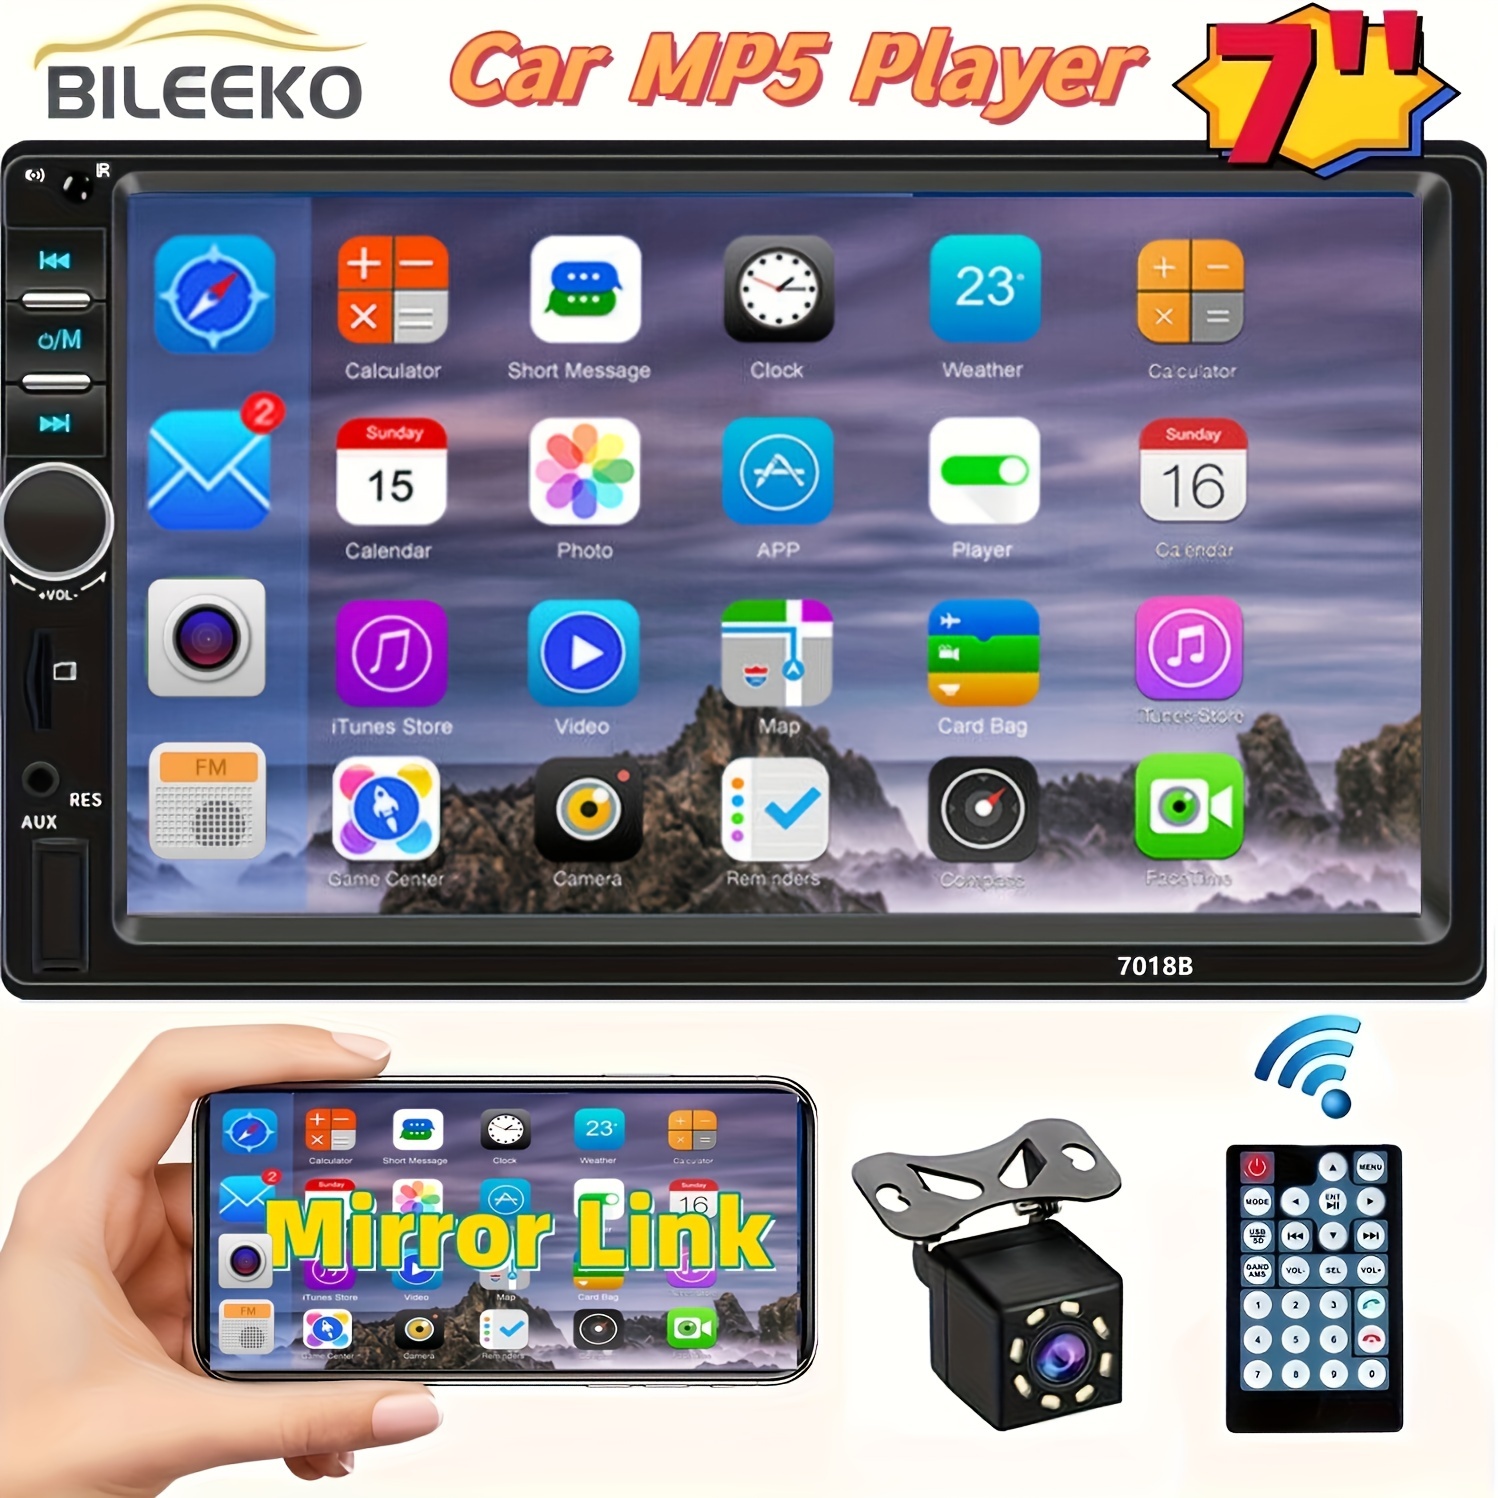 Autoradio Bluetooth, SD et USB avec support tablette 7' intégré